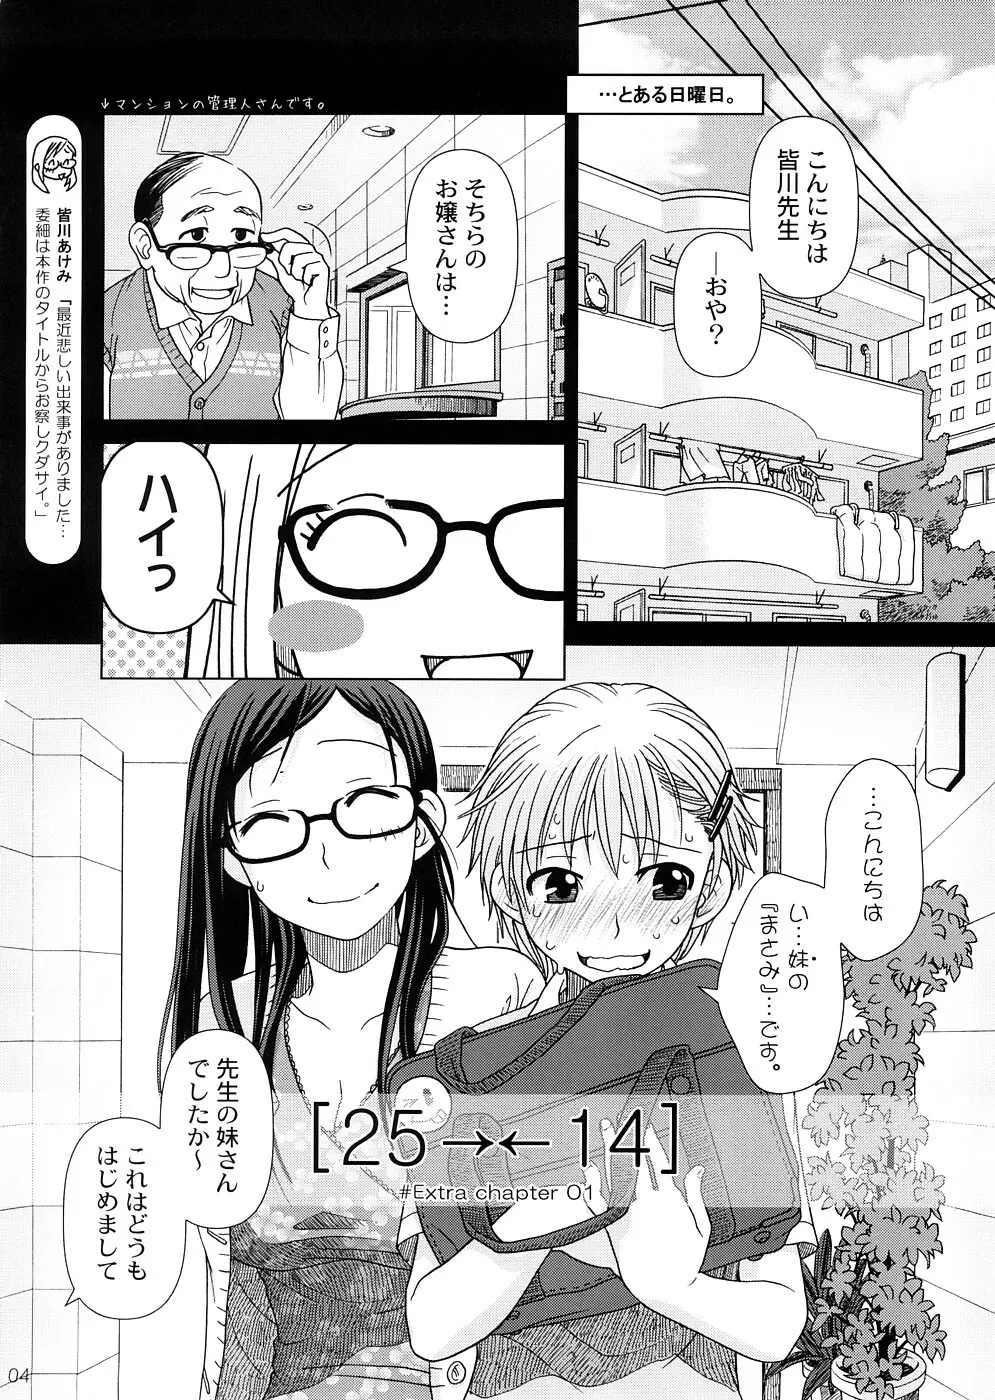 (COMIC1☆2) [オタクビーム (オオツカマヒロ)] 2514 [24→←14] #Extra chapter 3ページ